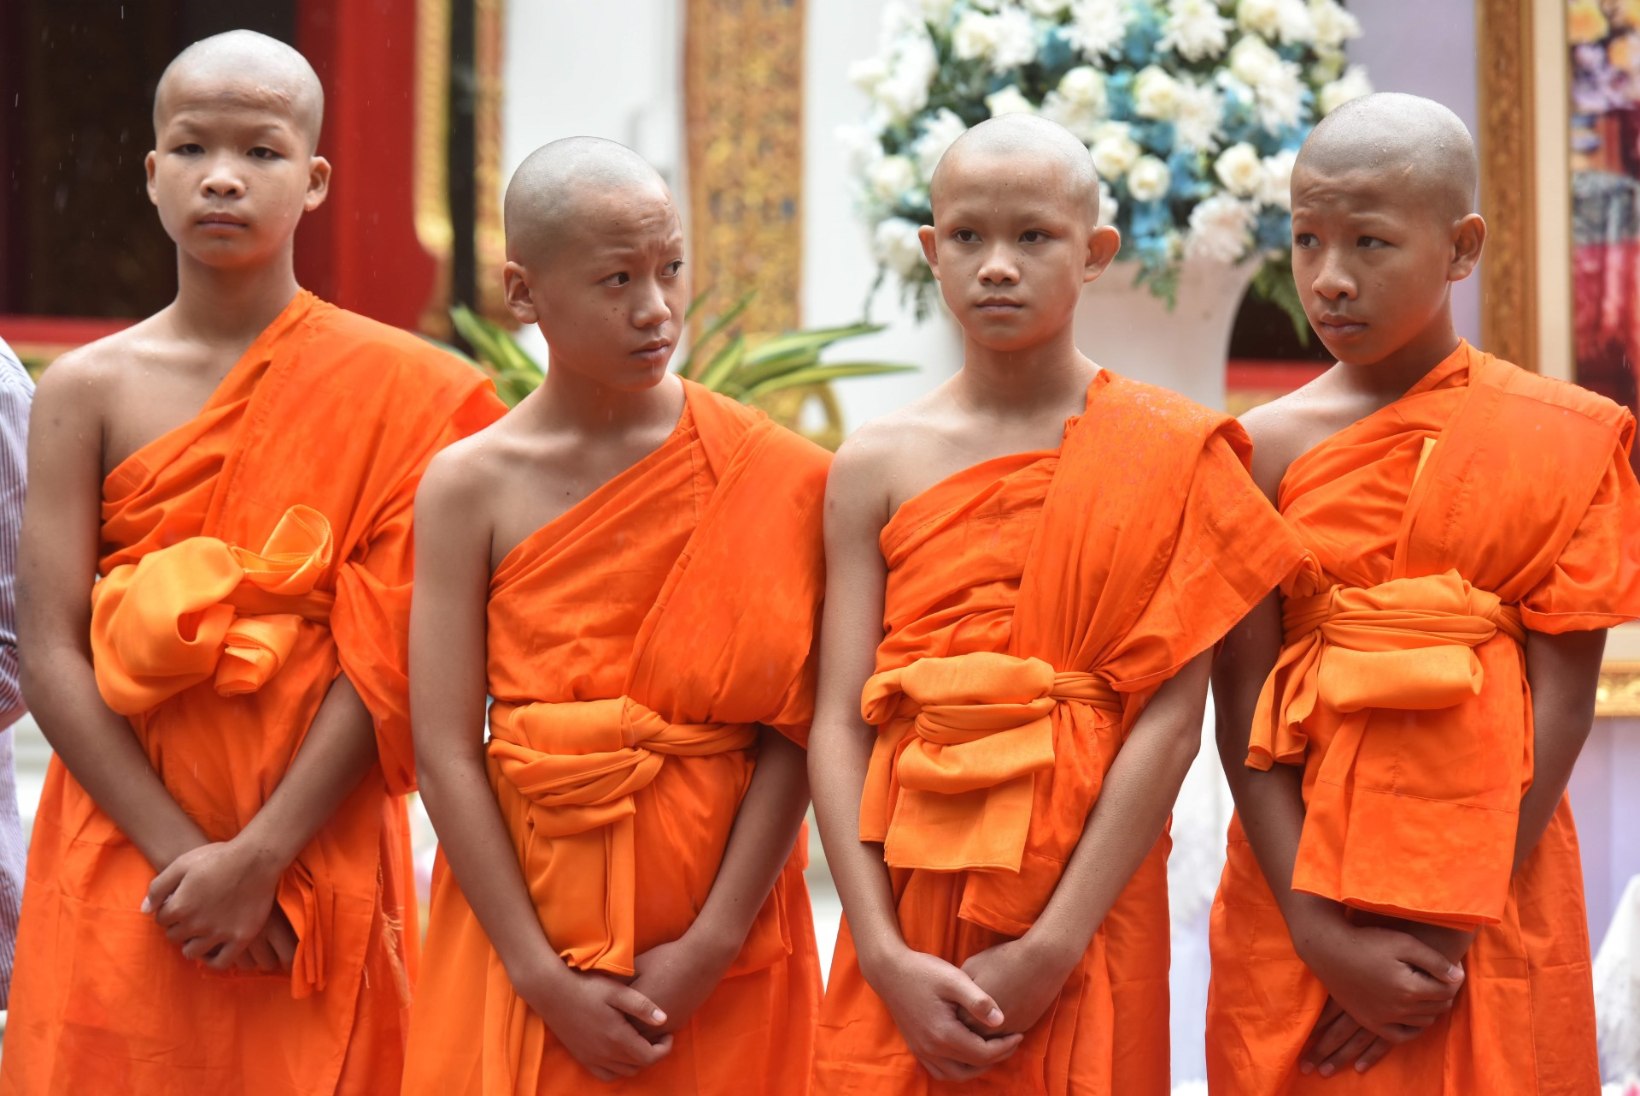 FOTOD | Tai koopapoisid on kloostris tundmatuseni muutunud